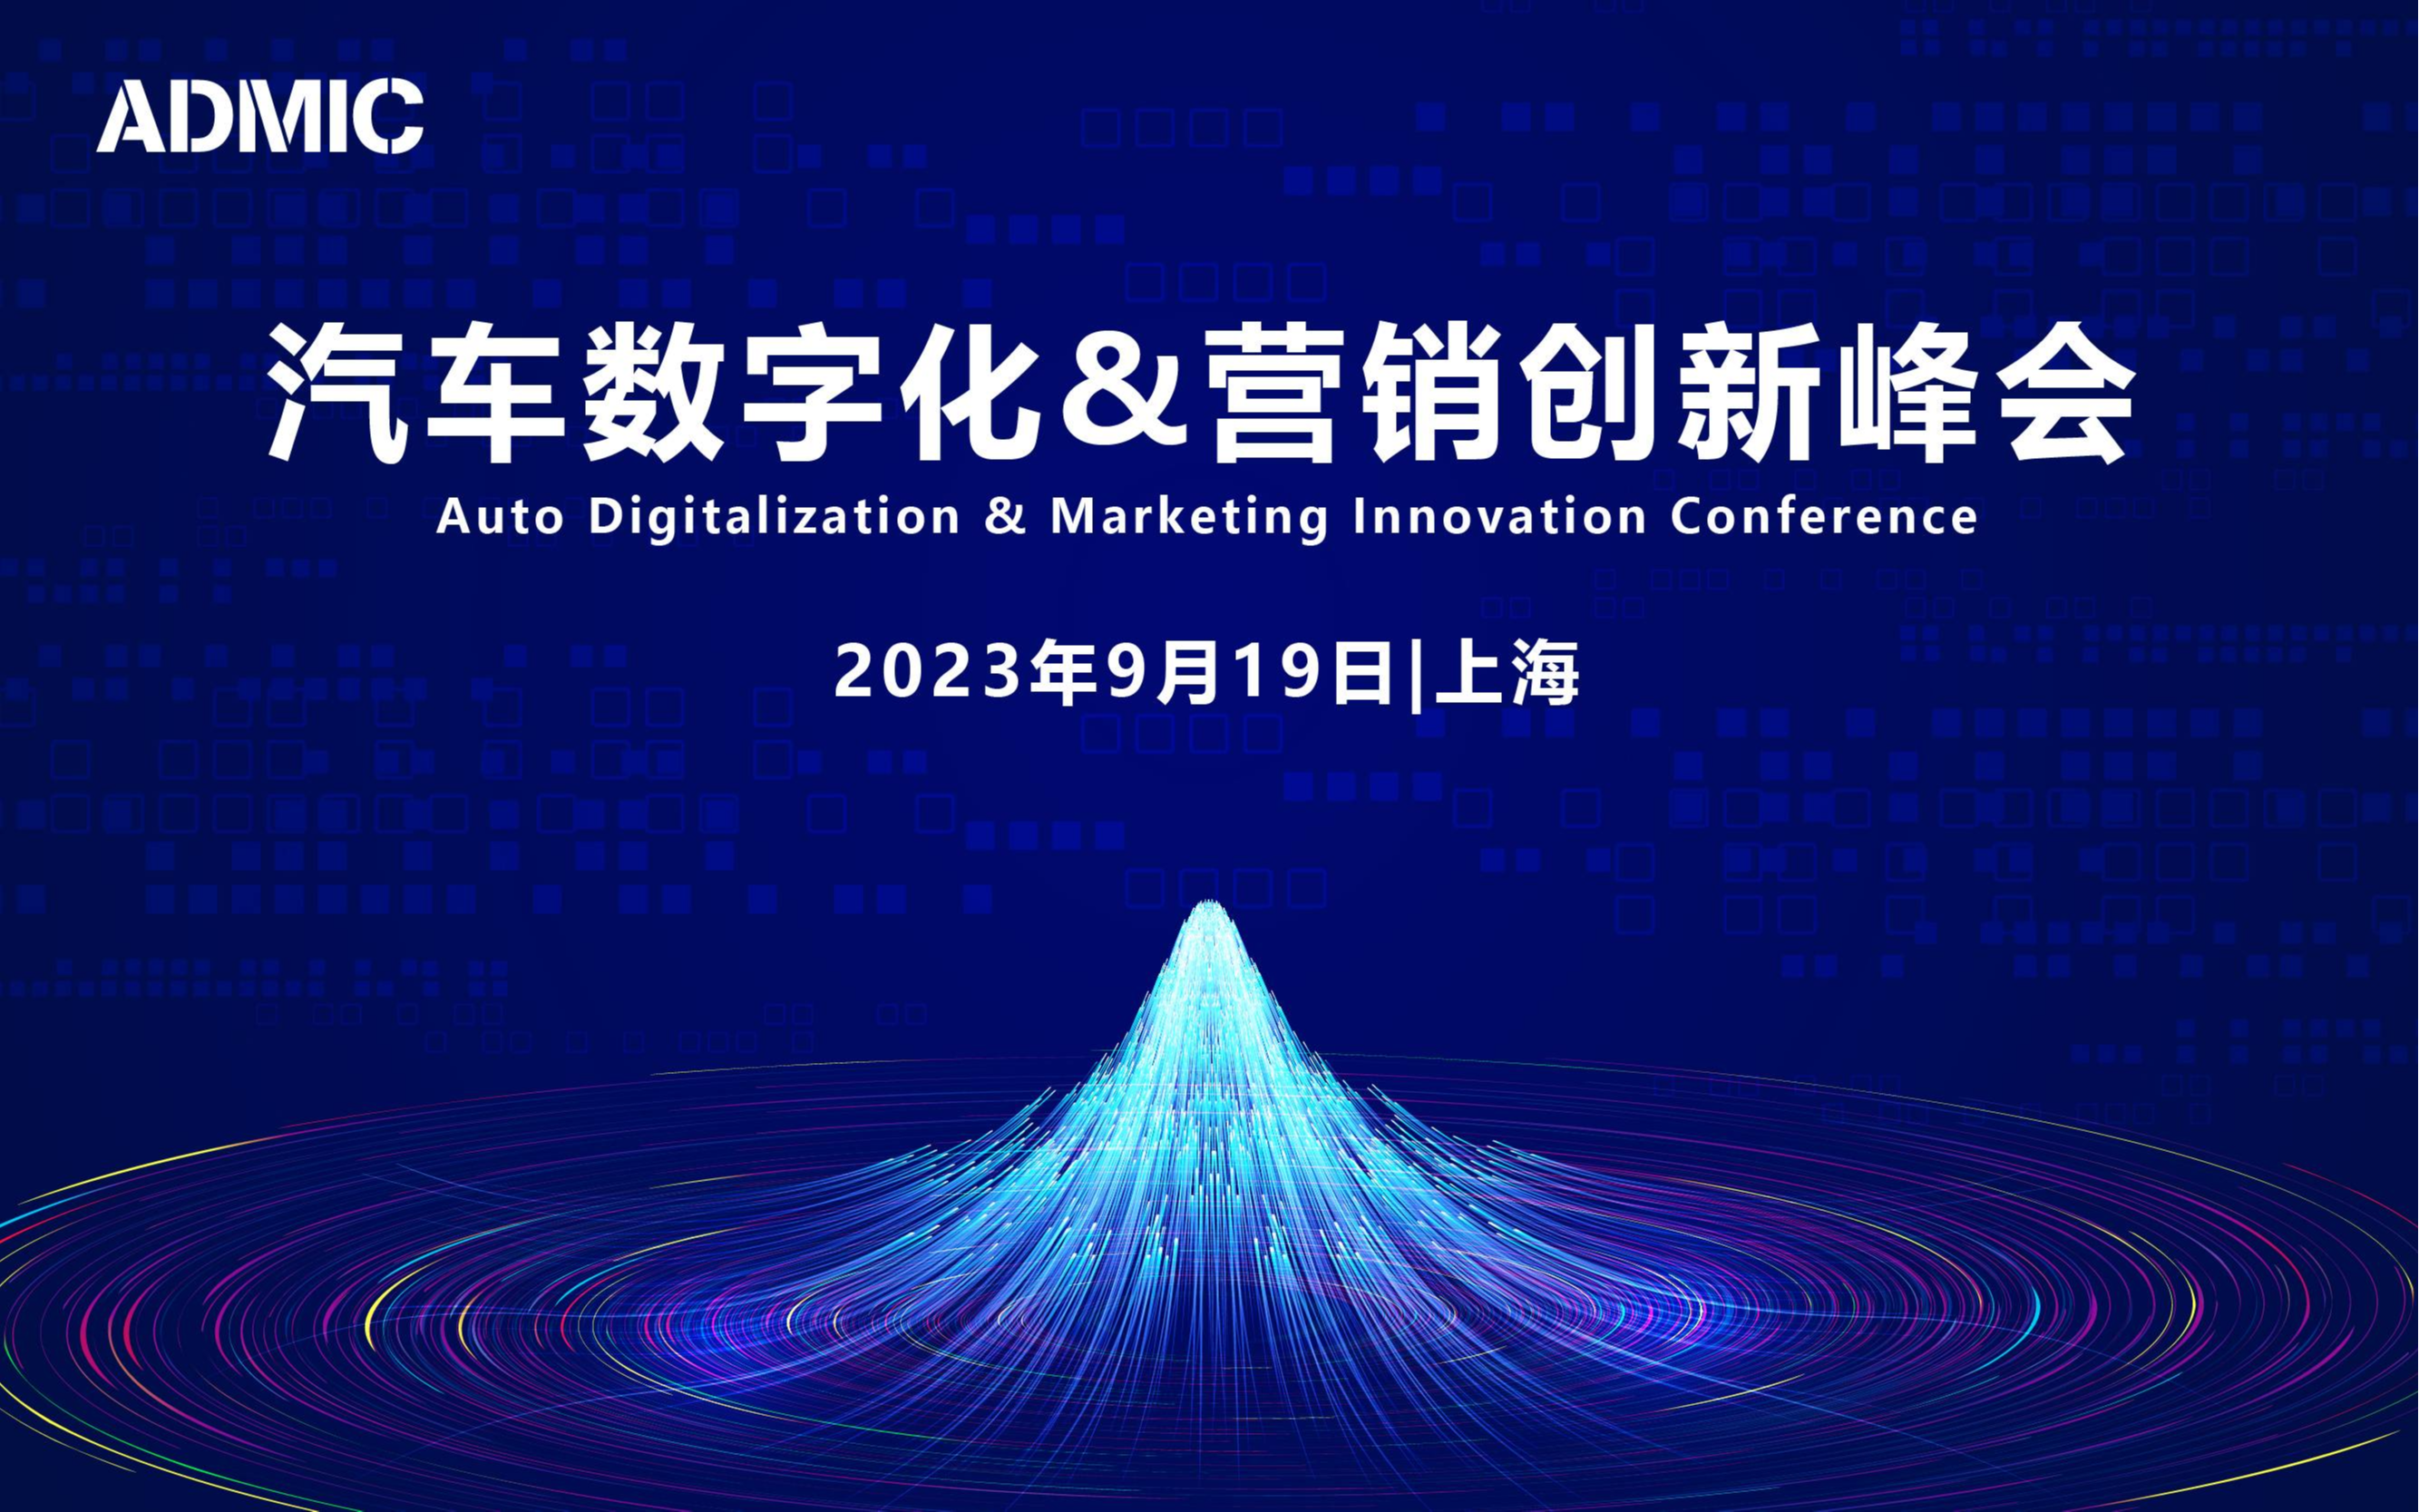 第六届ADMIC汽车数字化&营销创新峰会暨金璨奖颁奖盛典